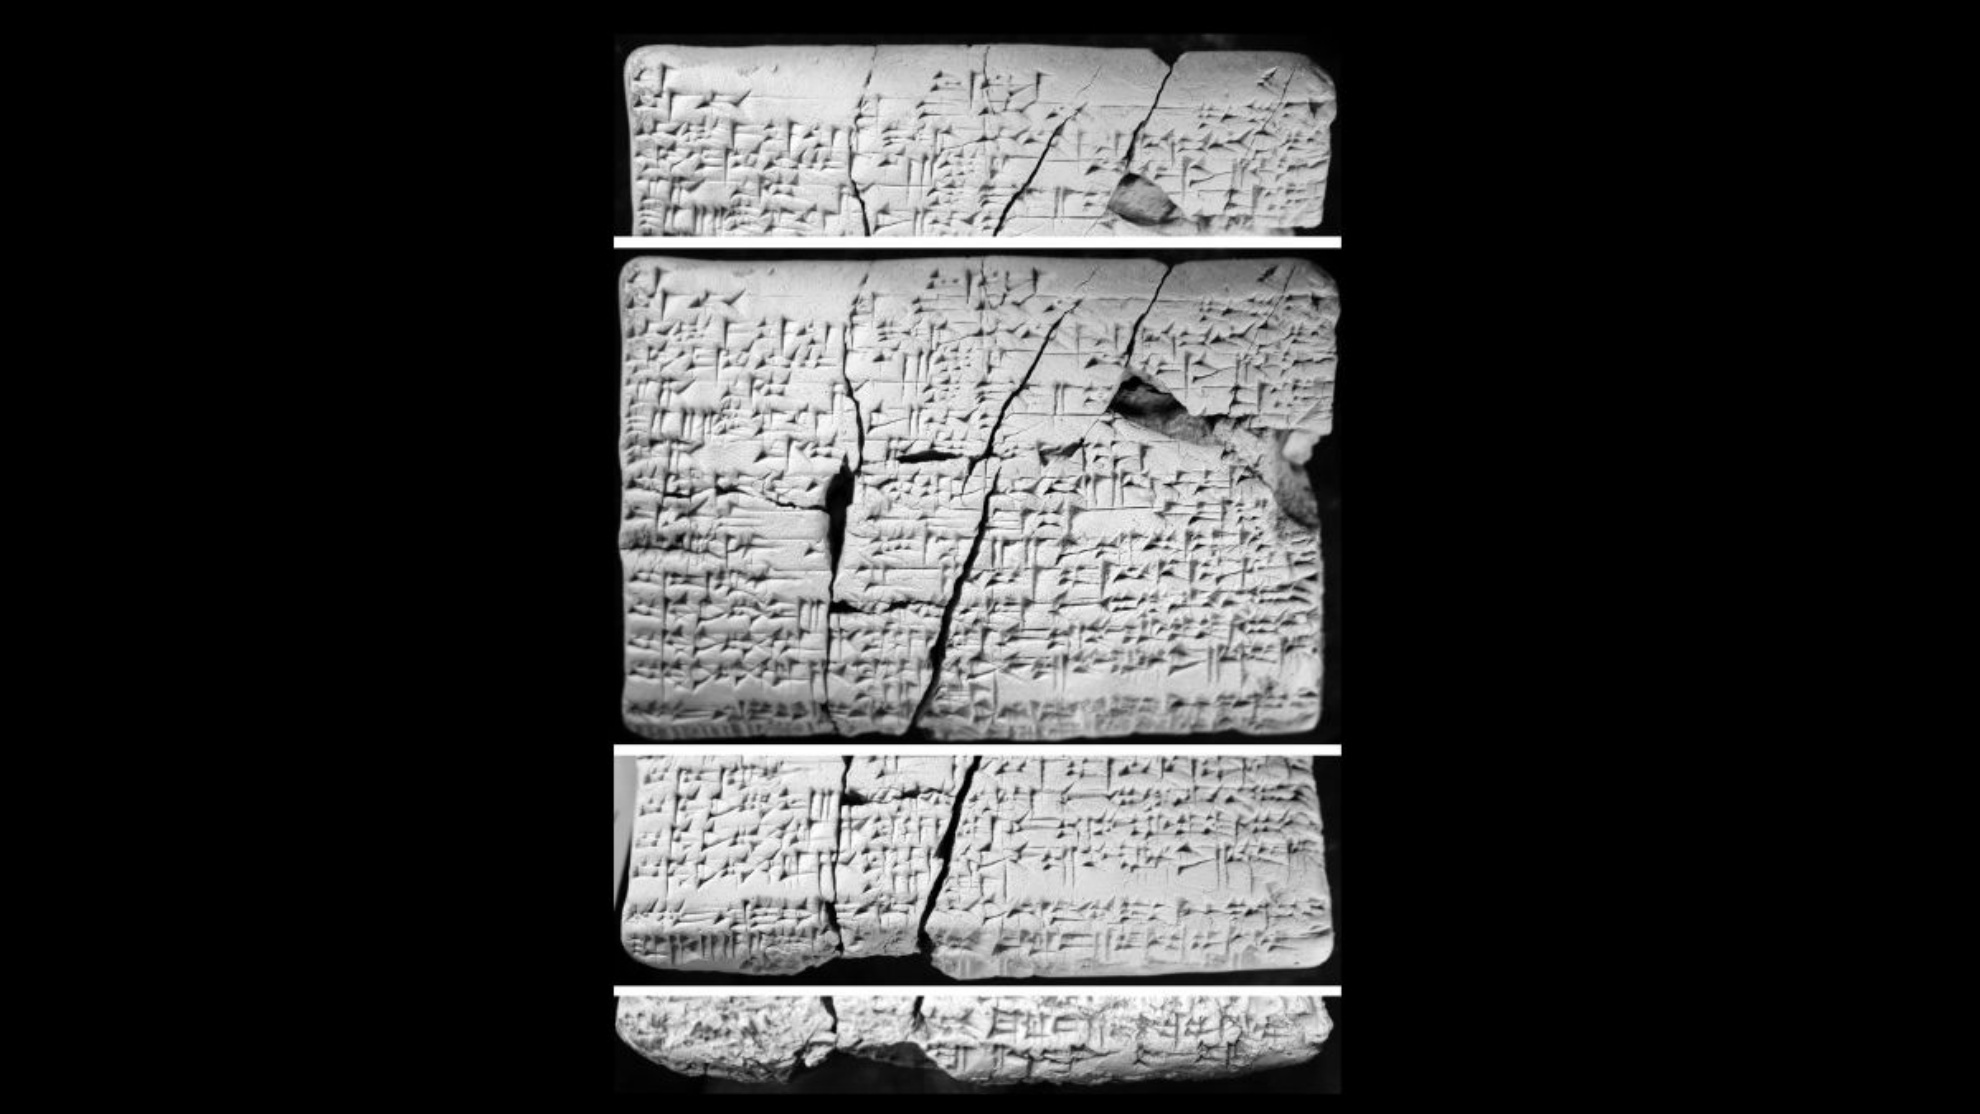 Die Tabletten wurden vor etwa 30 Jahren im Irak gefunden. Gelehrte begannen 2016, sie zu studieren und entdeckten, dass sie Details der „verlorenen“ amoritischen Sprache in Akkadisch enthalten.